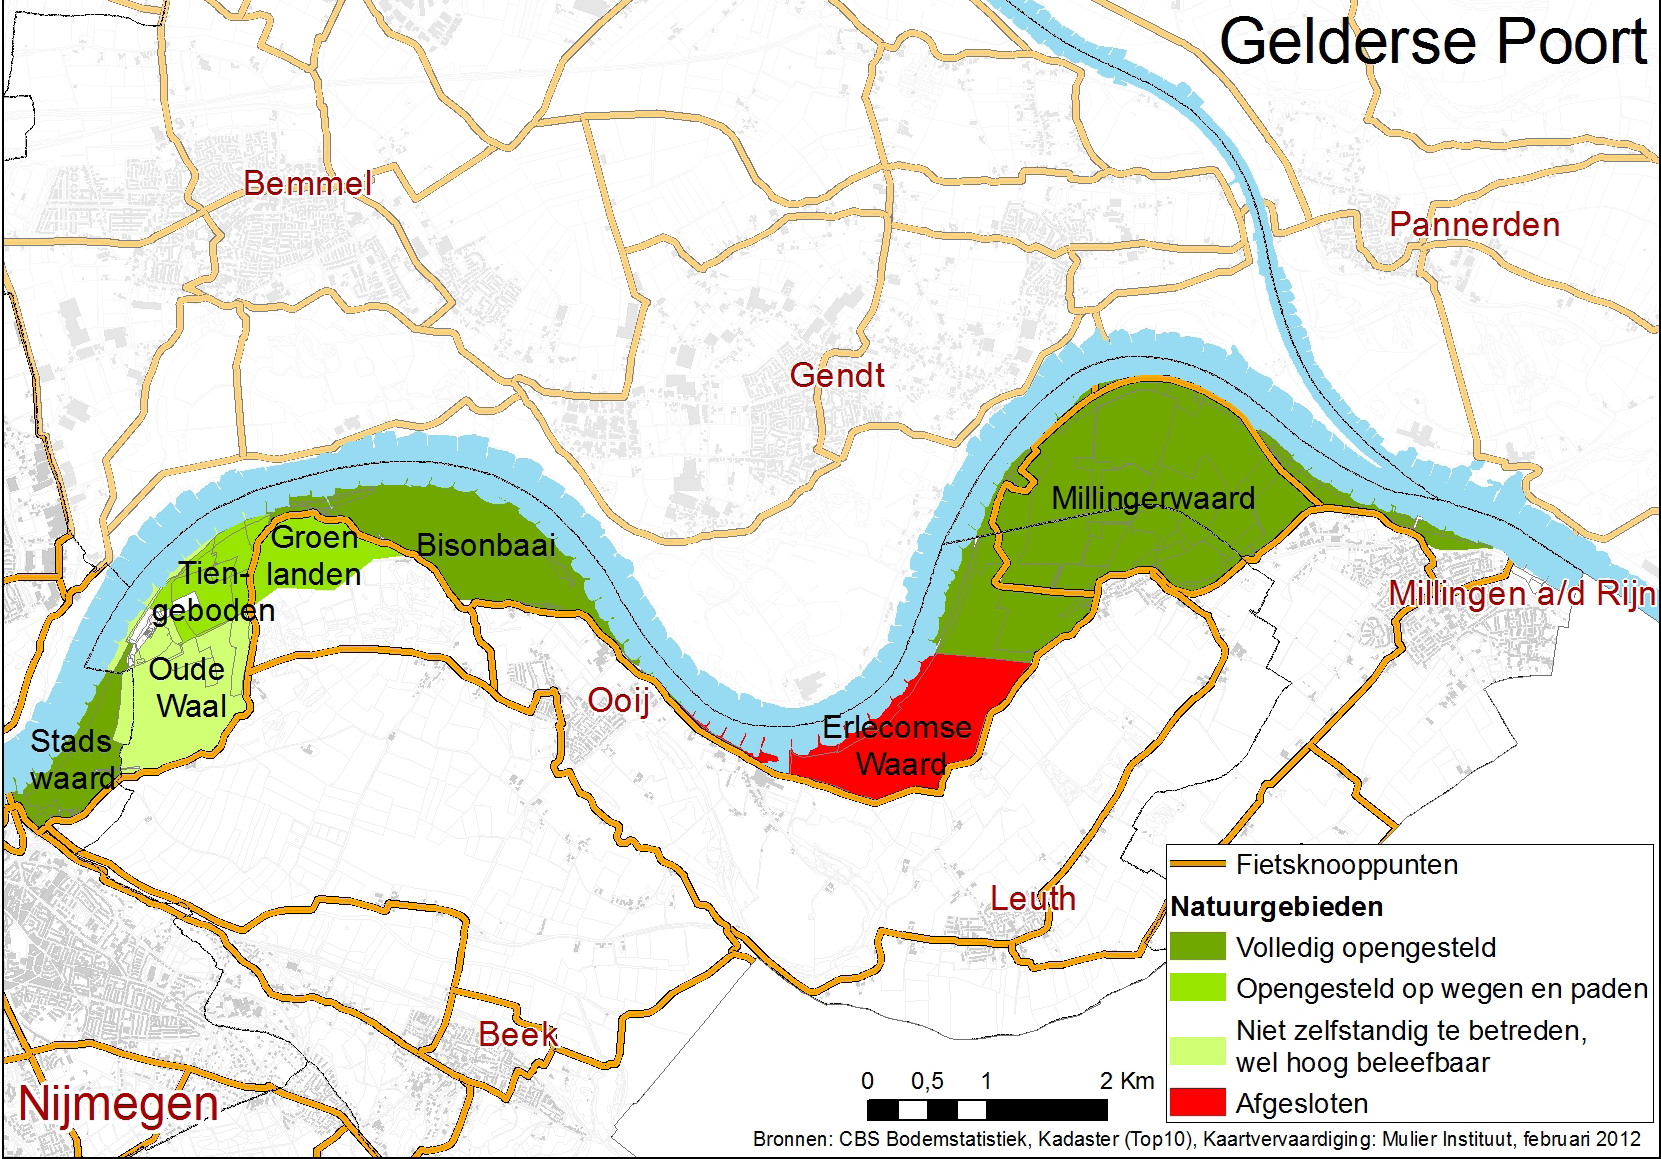 In de Gelderse Poort is de hoeveelheid natuur in het winterbed toegenomen met ca. 40% op de totale omvang van het winterbed in de periode 1996-2010. De grootste groei lag in de periode 1996 2004.